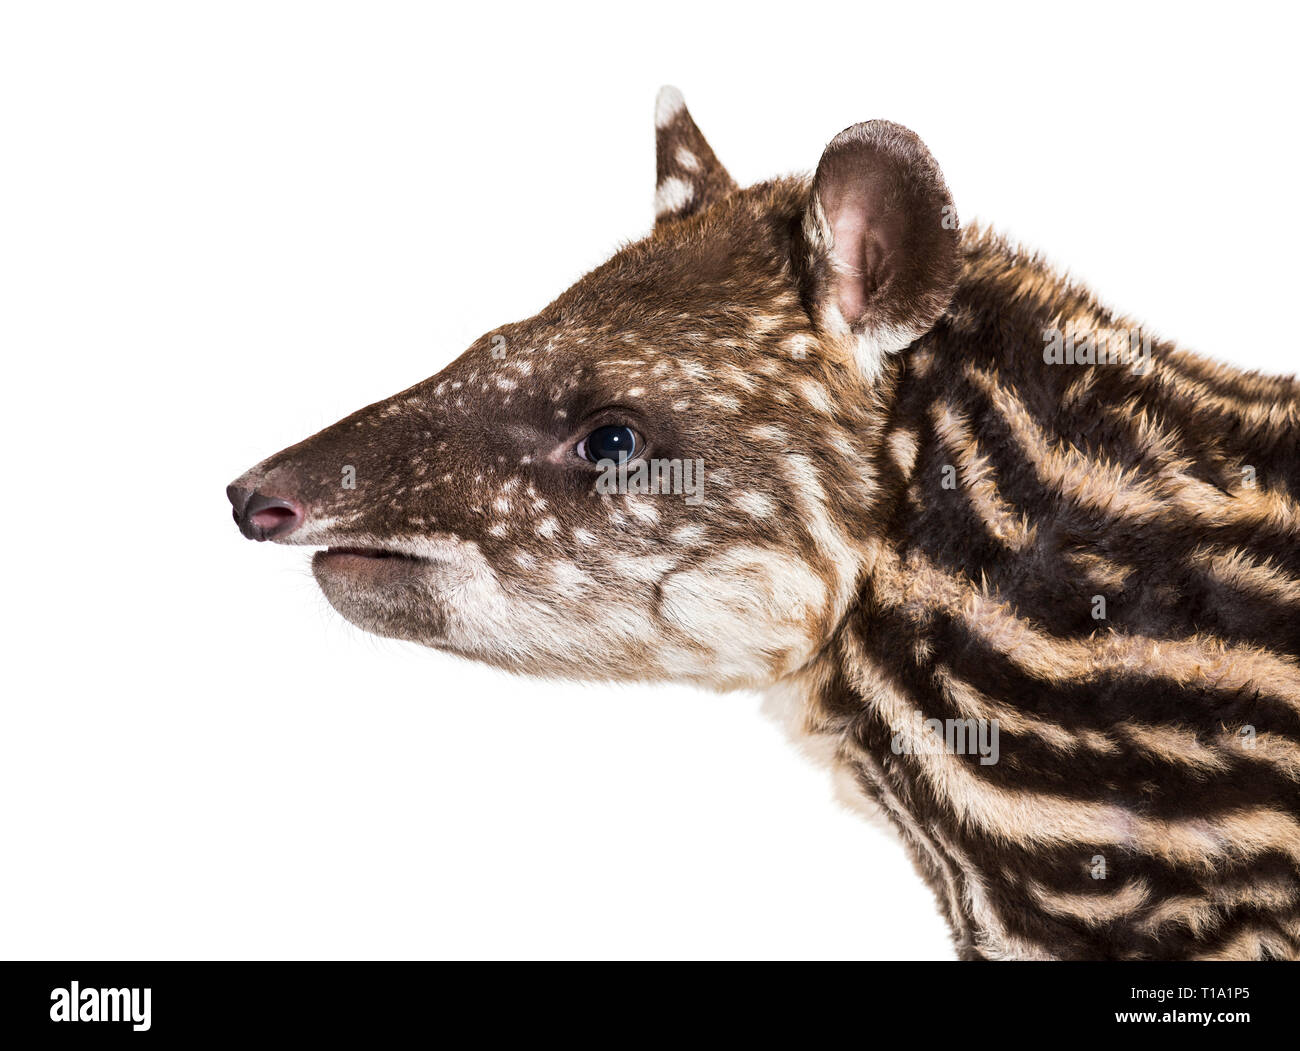 Mese vecchio tapiro brasiliano di fronte a uno sfondo bianco Foto Stock